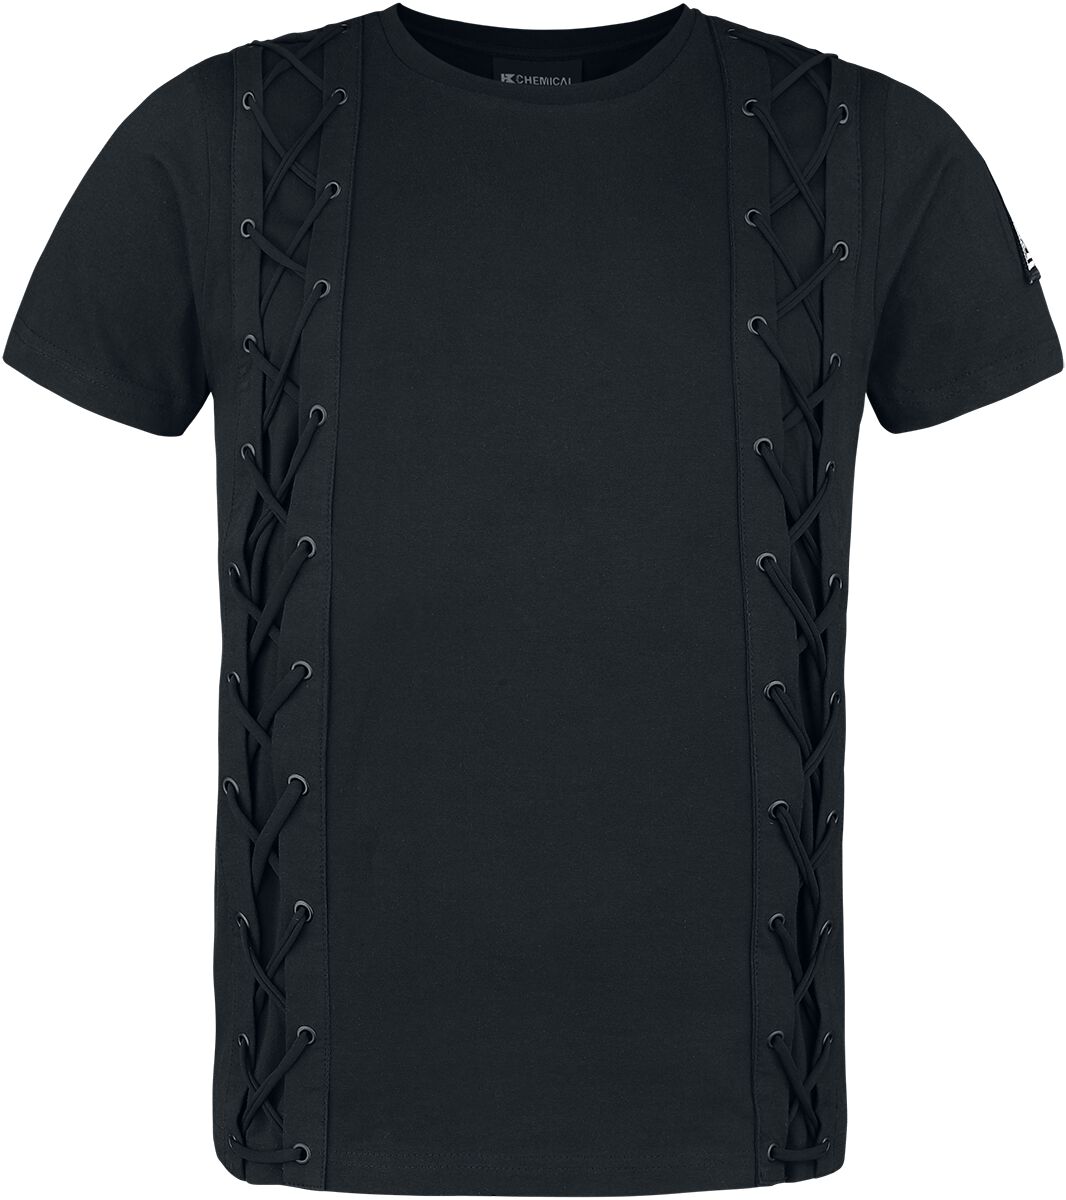 Chemical Black - Gothic T-Shirt - Gunner Top Mens Black - S bis 4XL - für Männer - Größe XXL - schwarz